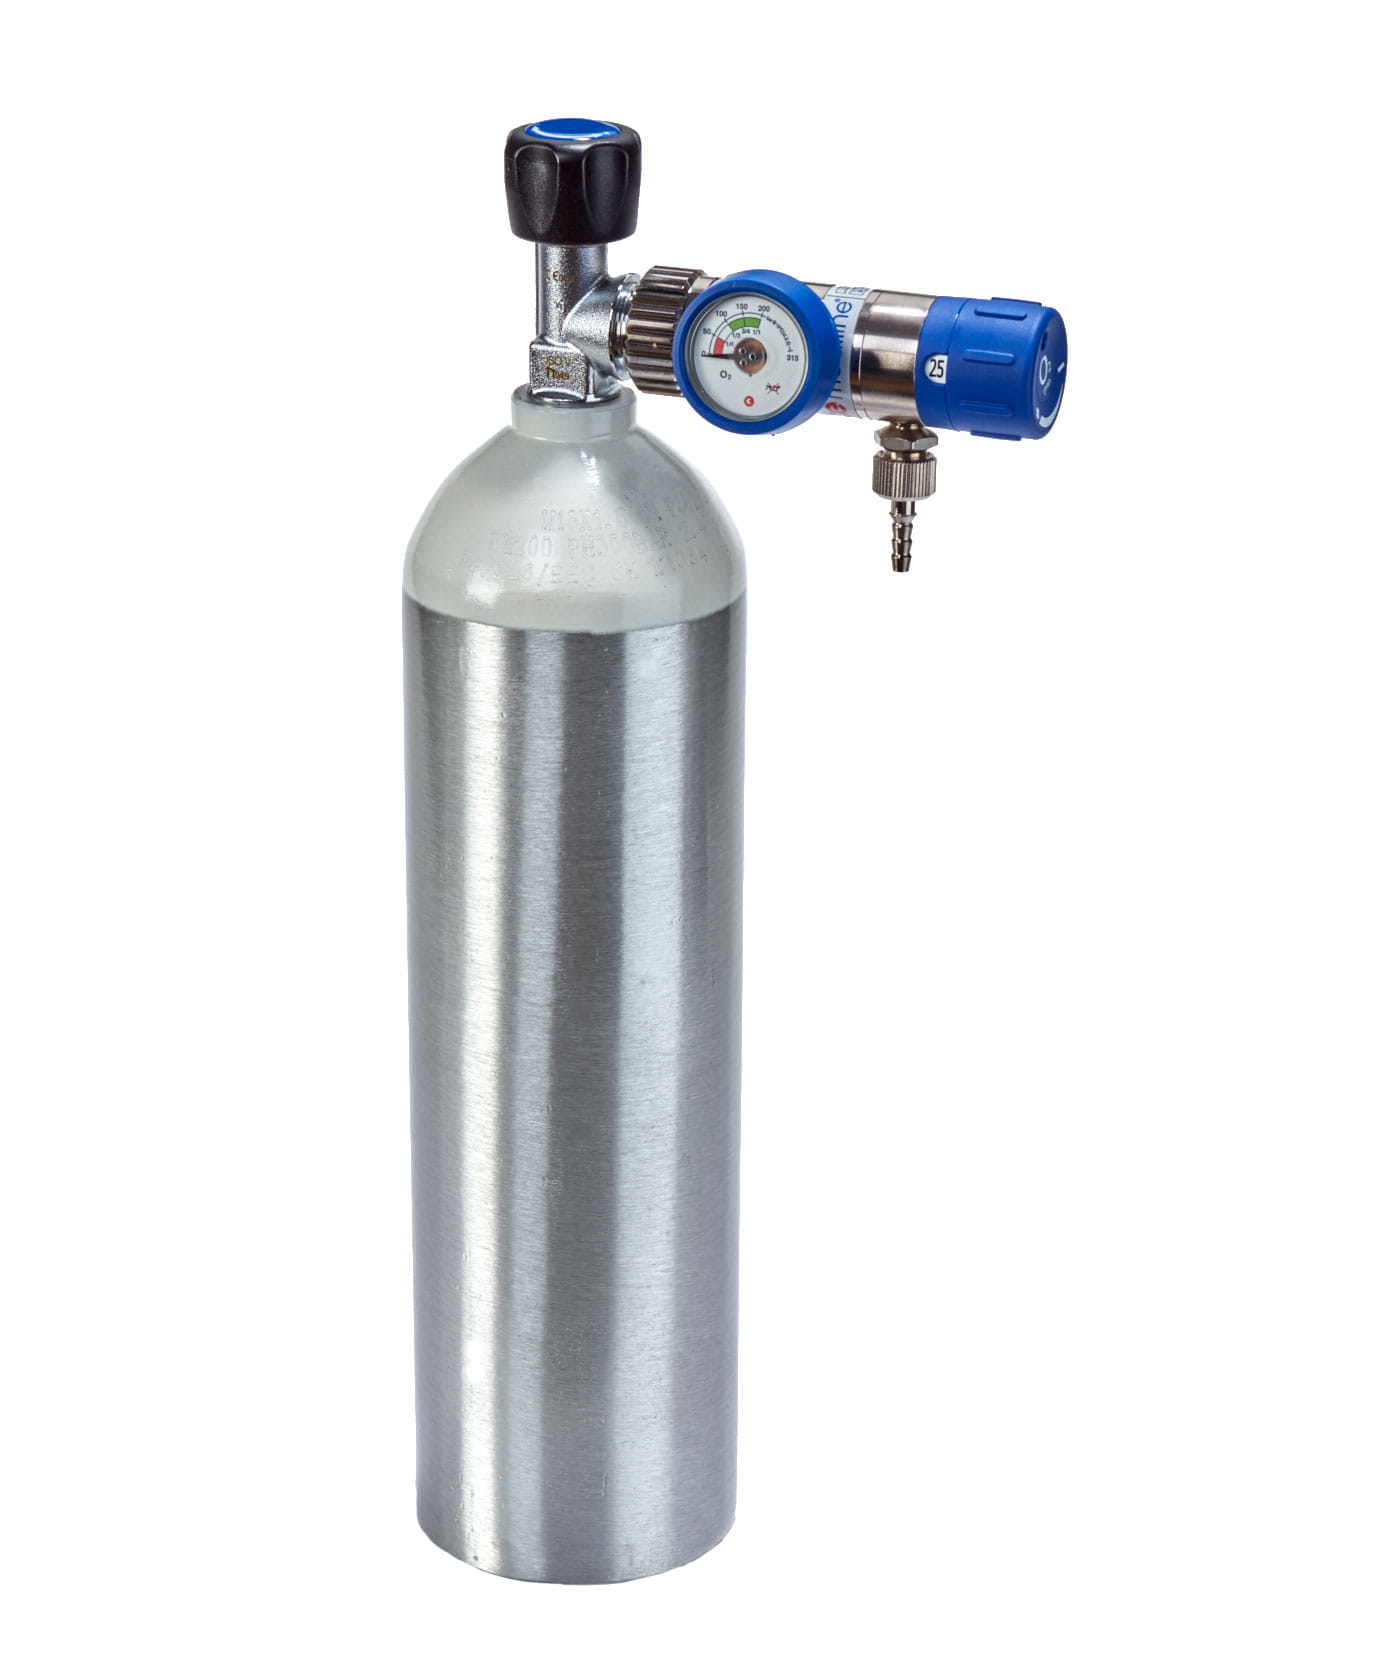 Sauerstoff-Komplett-Set - Druckminderer und Flasche 2 Liter - Aluflasche